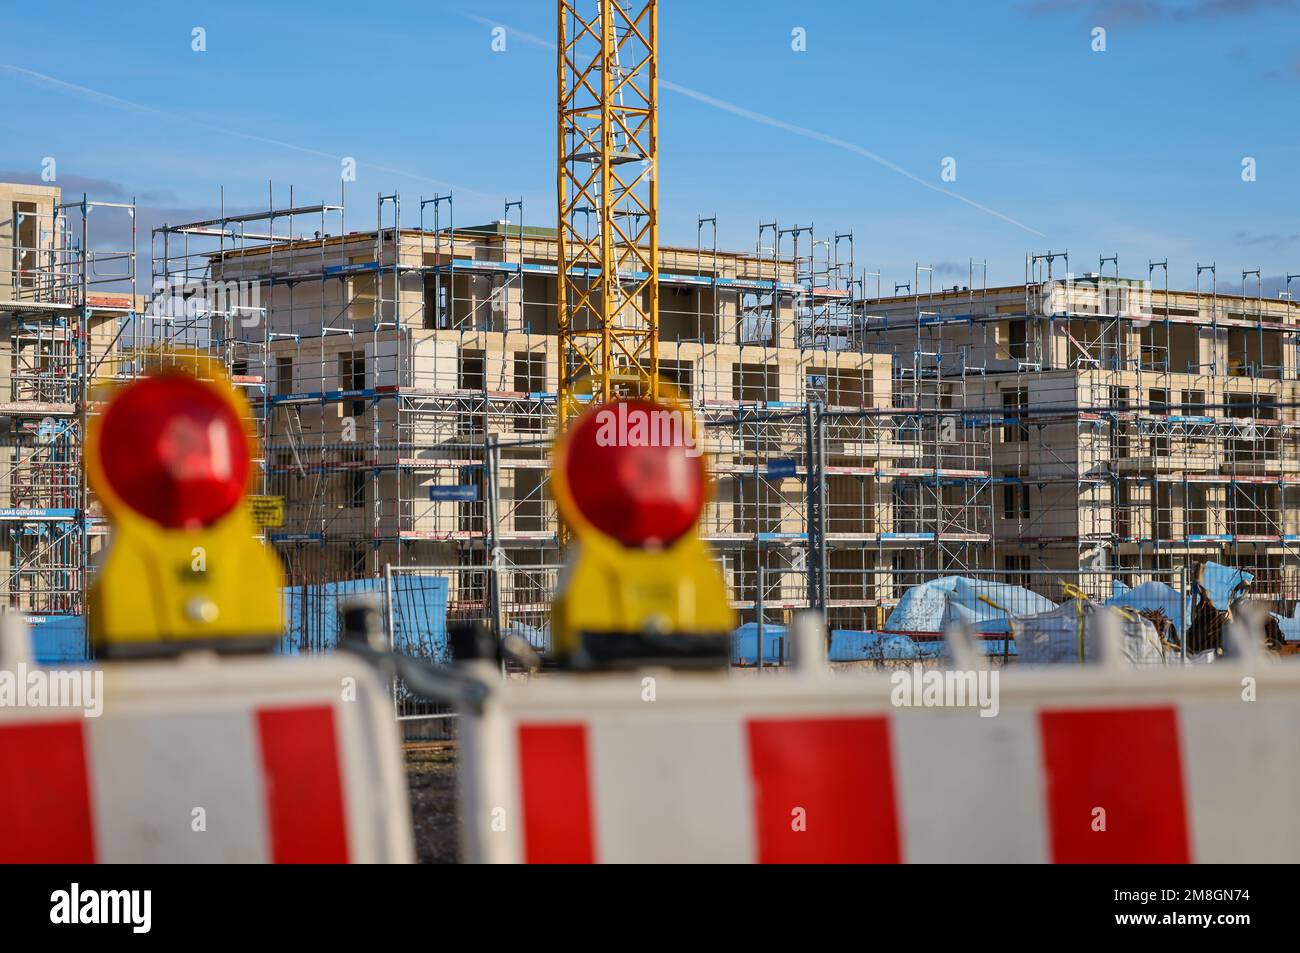 BEDBURG, Renania settentrionale-Vestfalia, Germania - costruzione residenziale, nuova costruzione di edifici residenziali multifamiliari, nuovo progetto di costruzione, Foto Stock